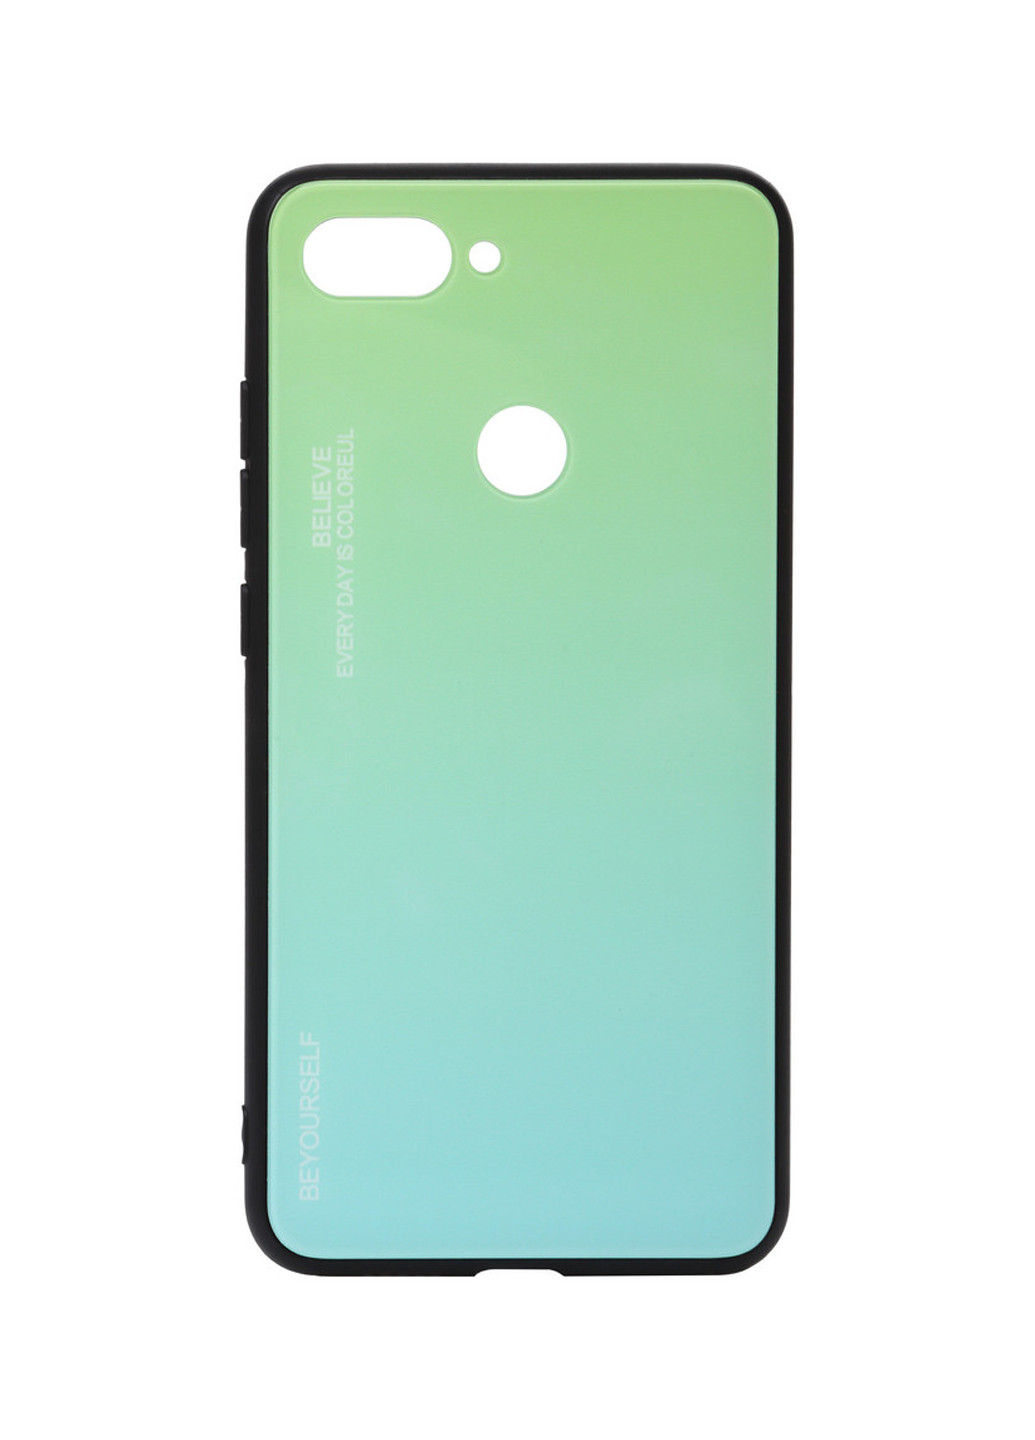 Панель Gradient Glass для Xiaomi Mi 8 Lite Green-Blue (703572) BeCover gradient glass для xiaomi mi 8 lite green-blue (703572) (147838012)